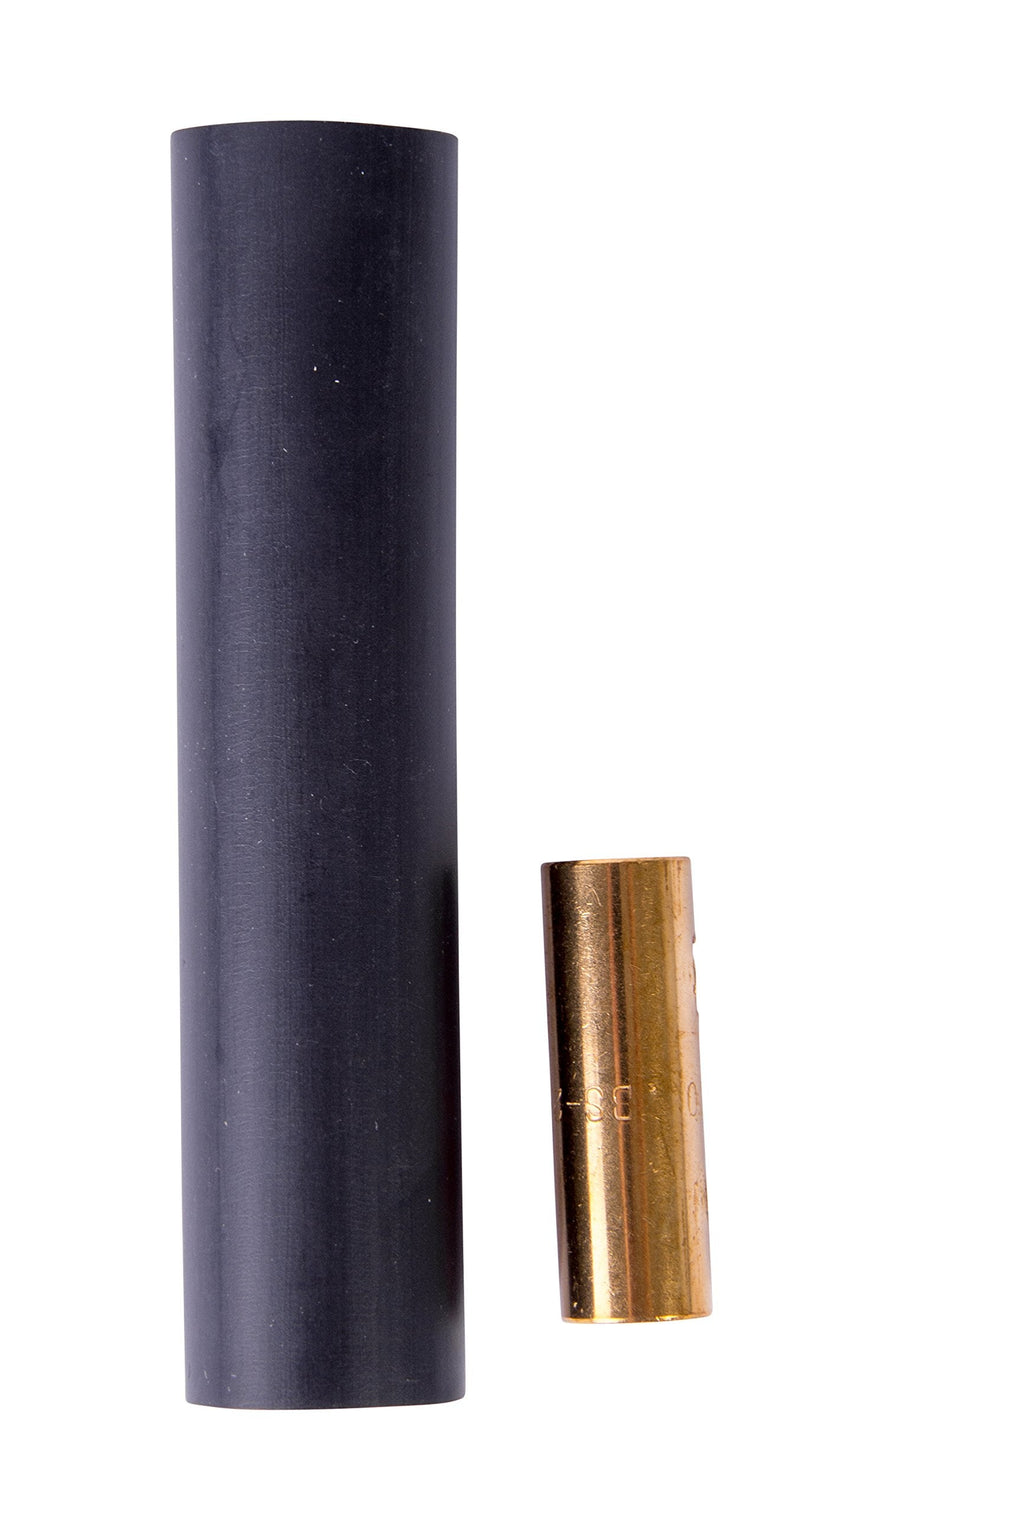 [Australia - AusPower] - Gardner Bender HSB-28 Cable Splice Kit, 8-2 AWG, Black Butt Splice Kit 